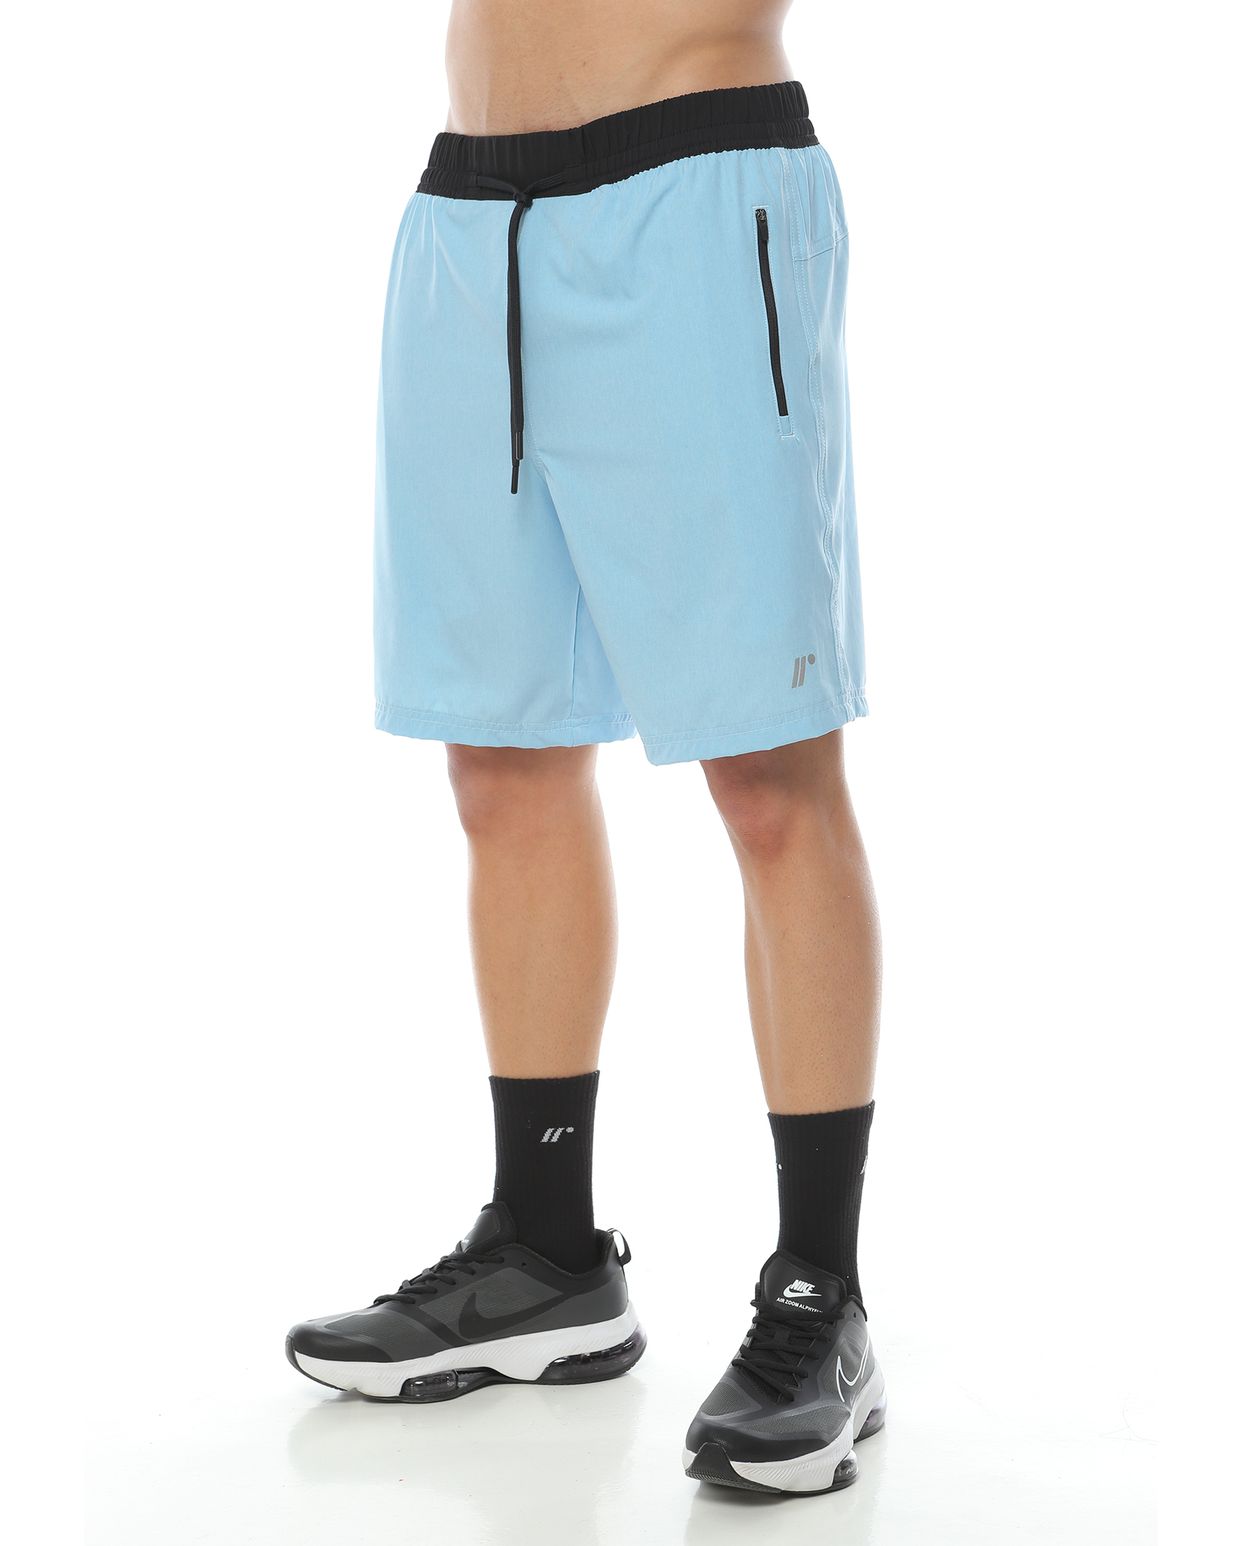 Pantaloneta Deportiva, Color Azul Claro Jaspe Para Hombre - racketball movil